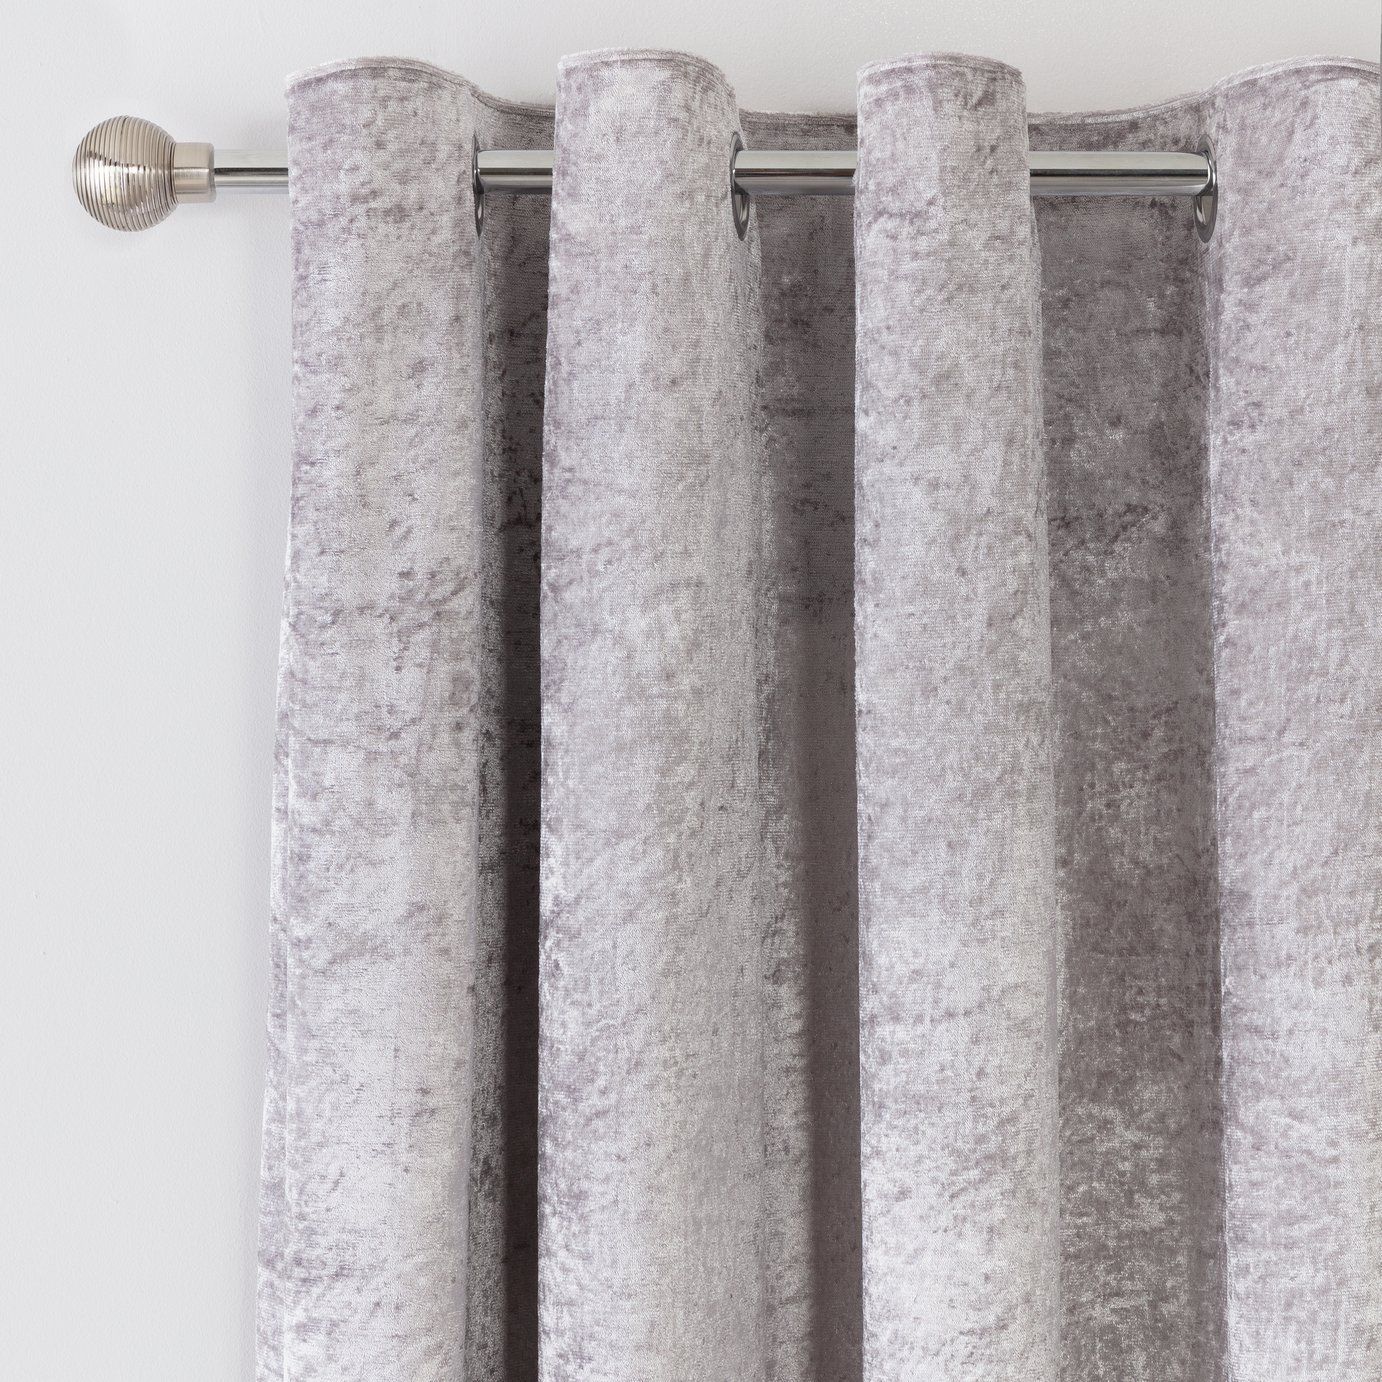 18 room decor Grey curtains ideas